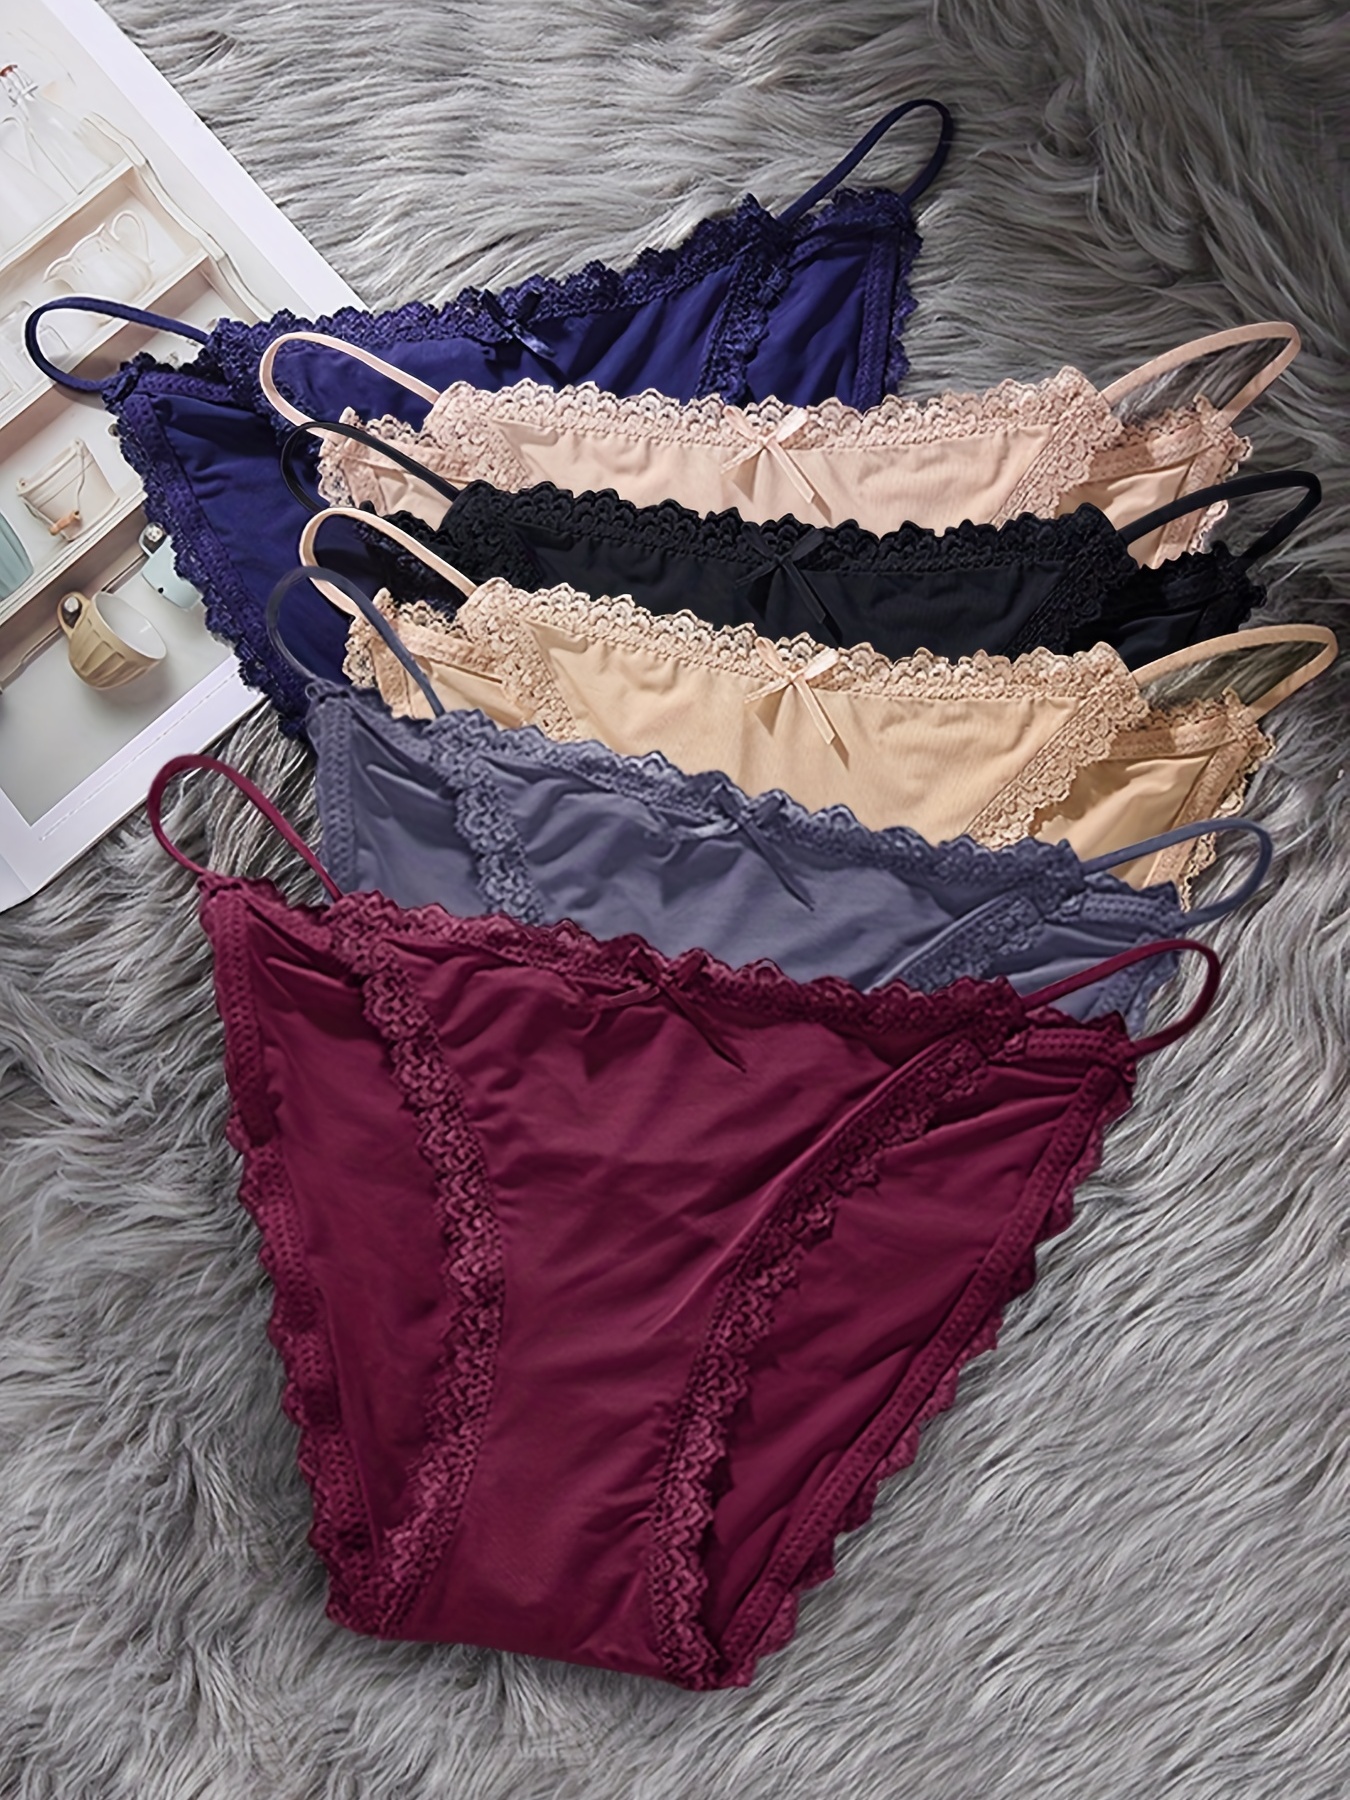 6pcs Contrast Lace Panties, Soft & Comfy Low Waist Stretchy Panties,  Women's Lingerie & Underwear